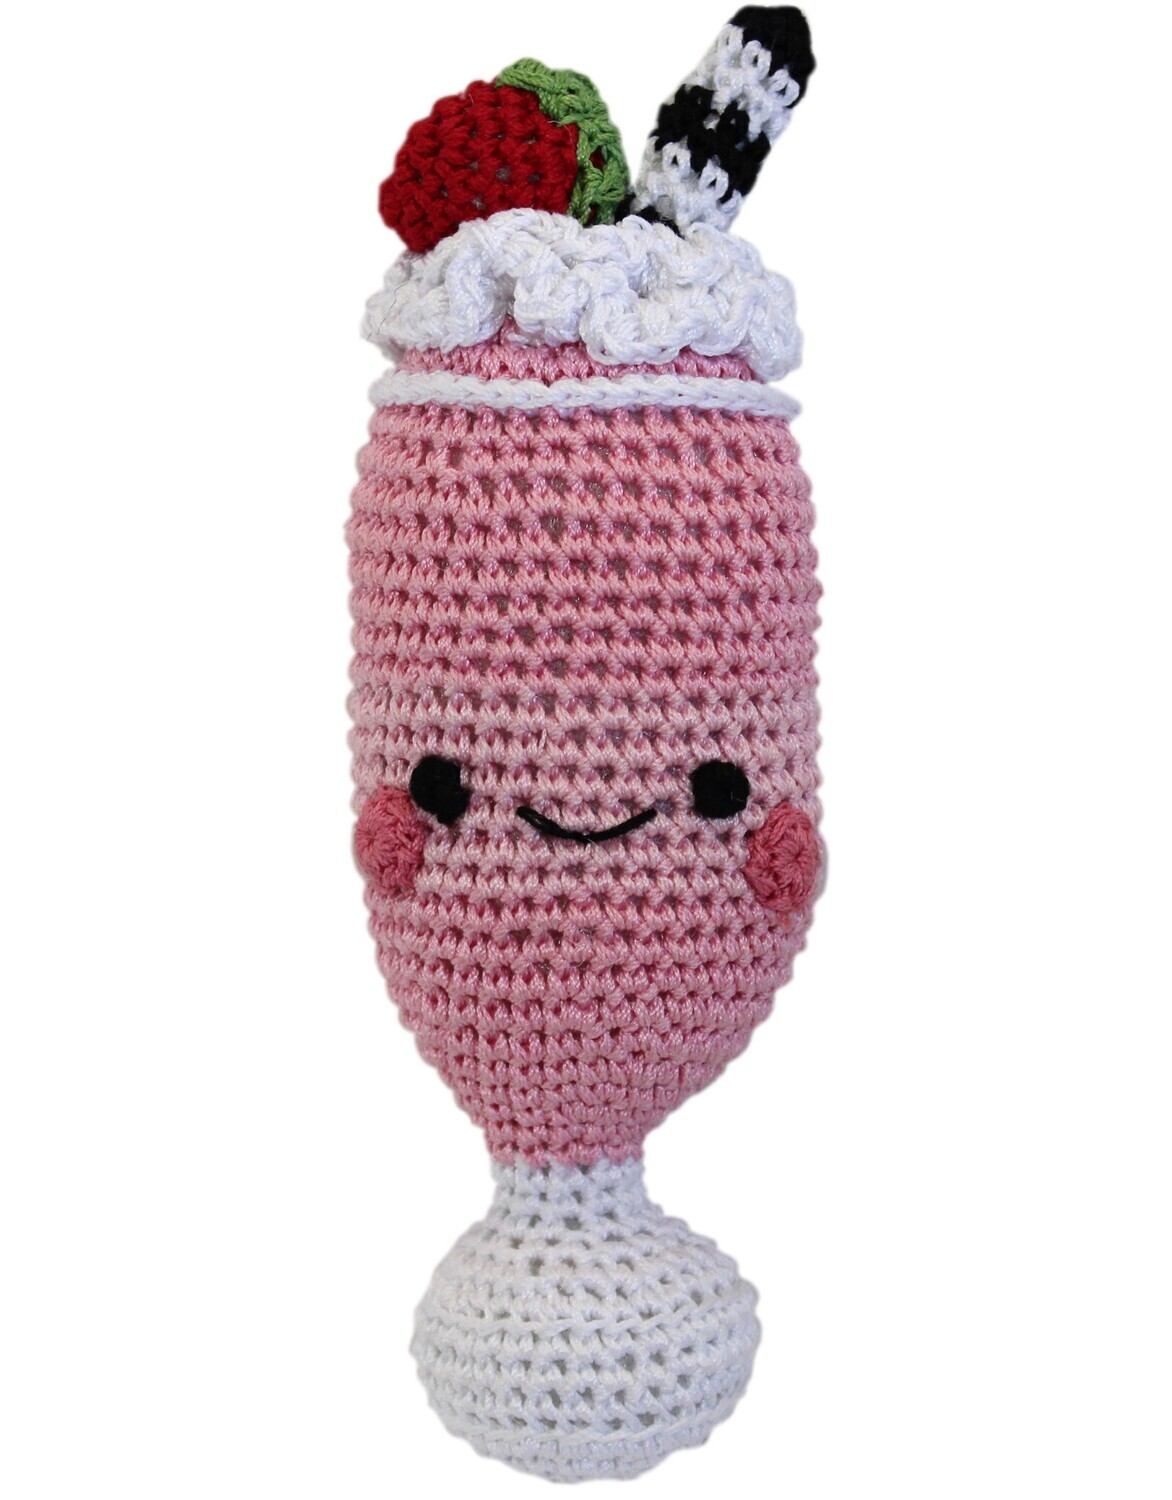 Organic Crochet Strawberry Milkshake Toy